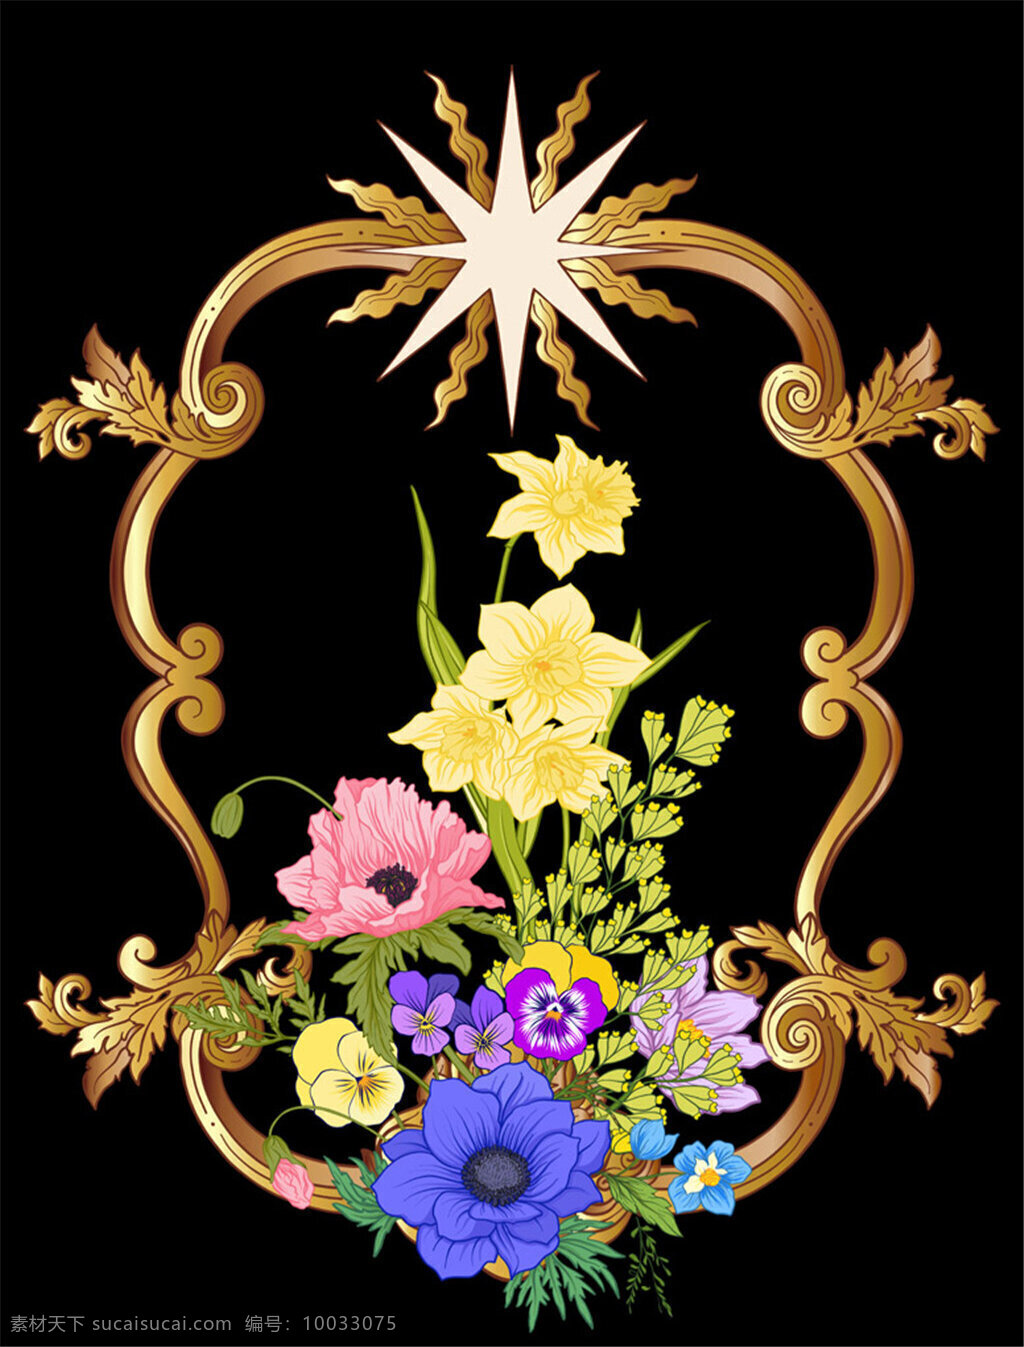 矢量 花朵 边框 彩色花朵 花朵边框 花朵设计 花纹 金属边框 精美边框 生活百科 矢量素材 鲜花